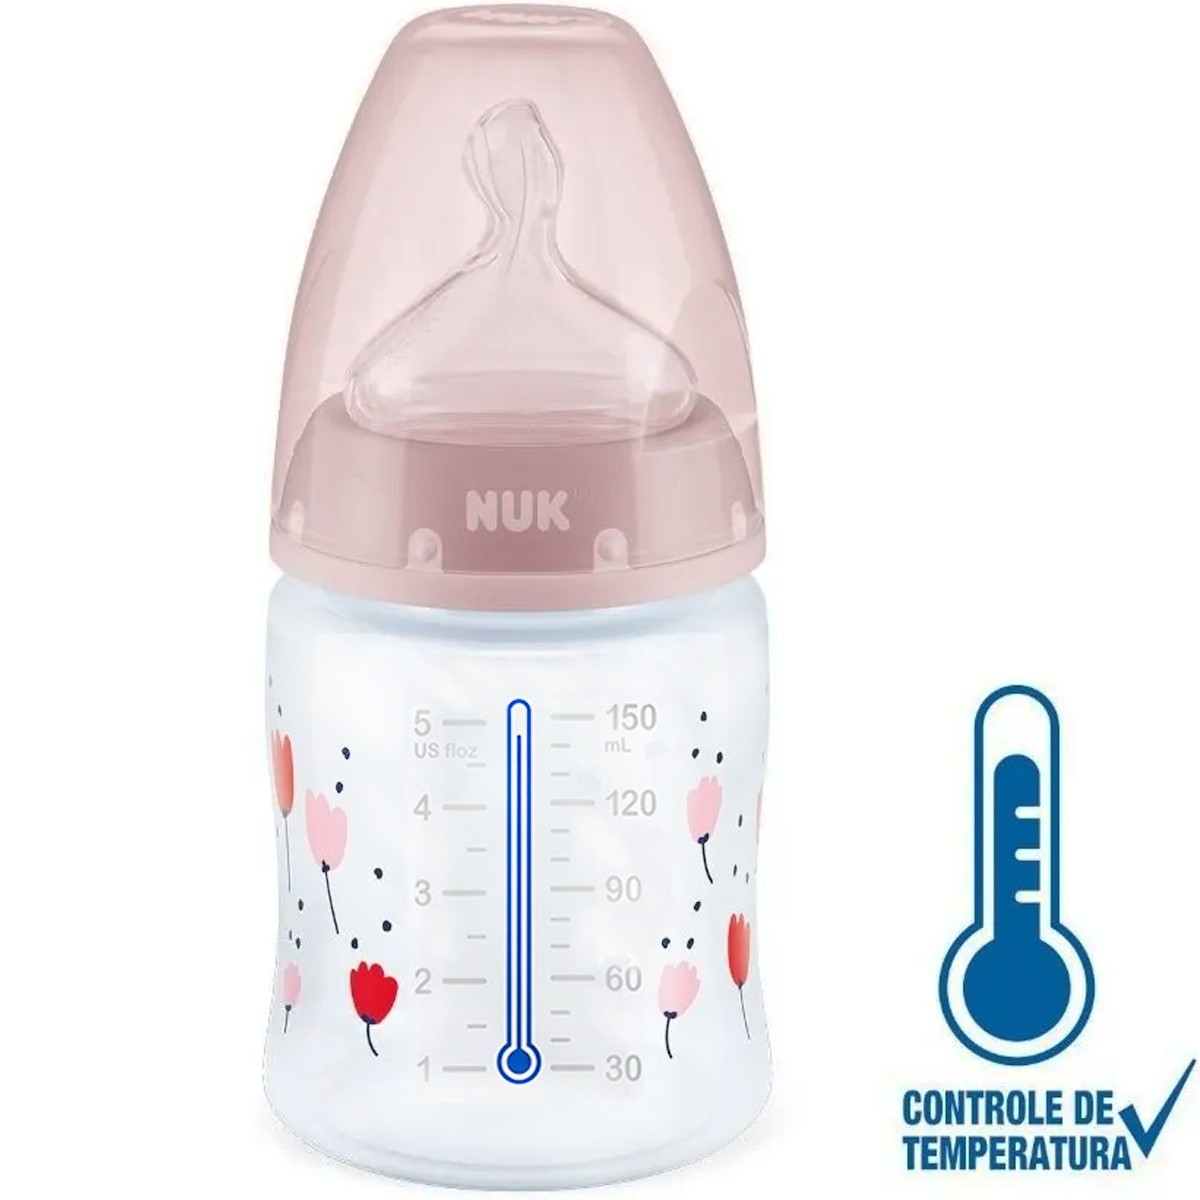 Mamadeira de Bebê Nuk Anticólica com Controle de Temperatura 150ml Tam.1 Rosa